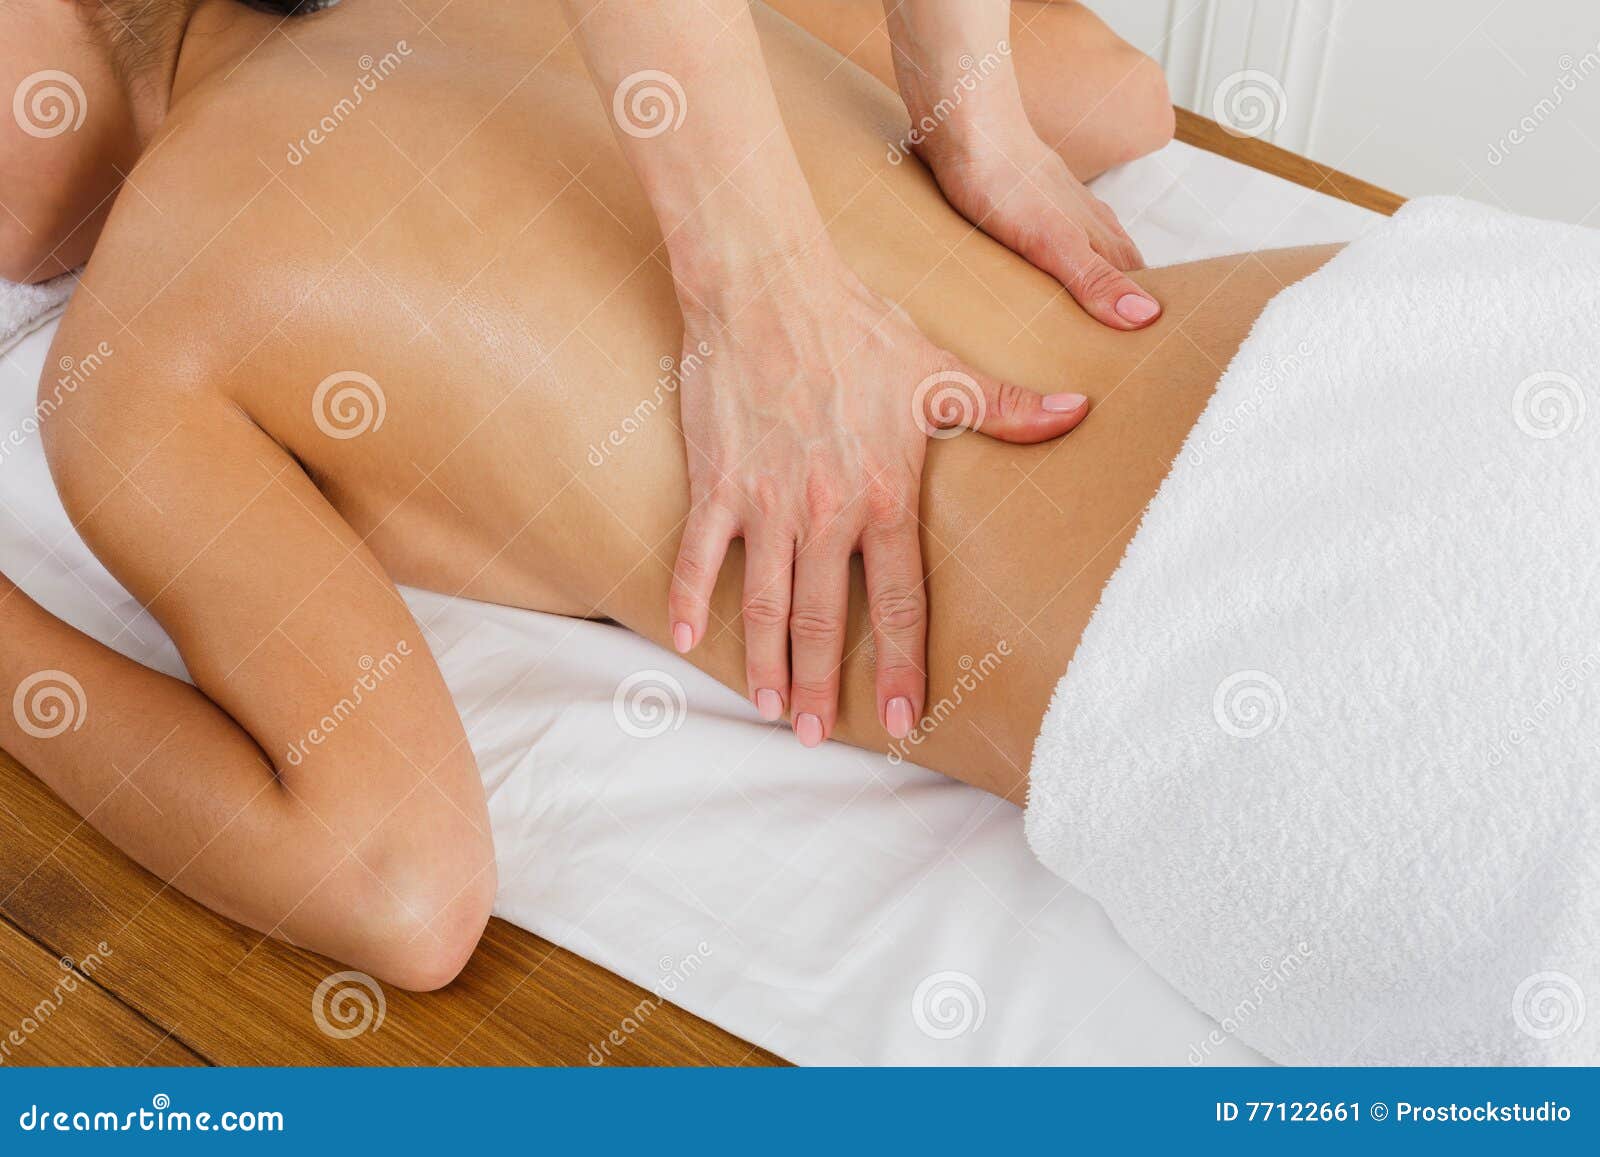 closeup massagist hands make body massage in spa wellness center